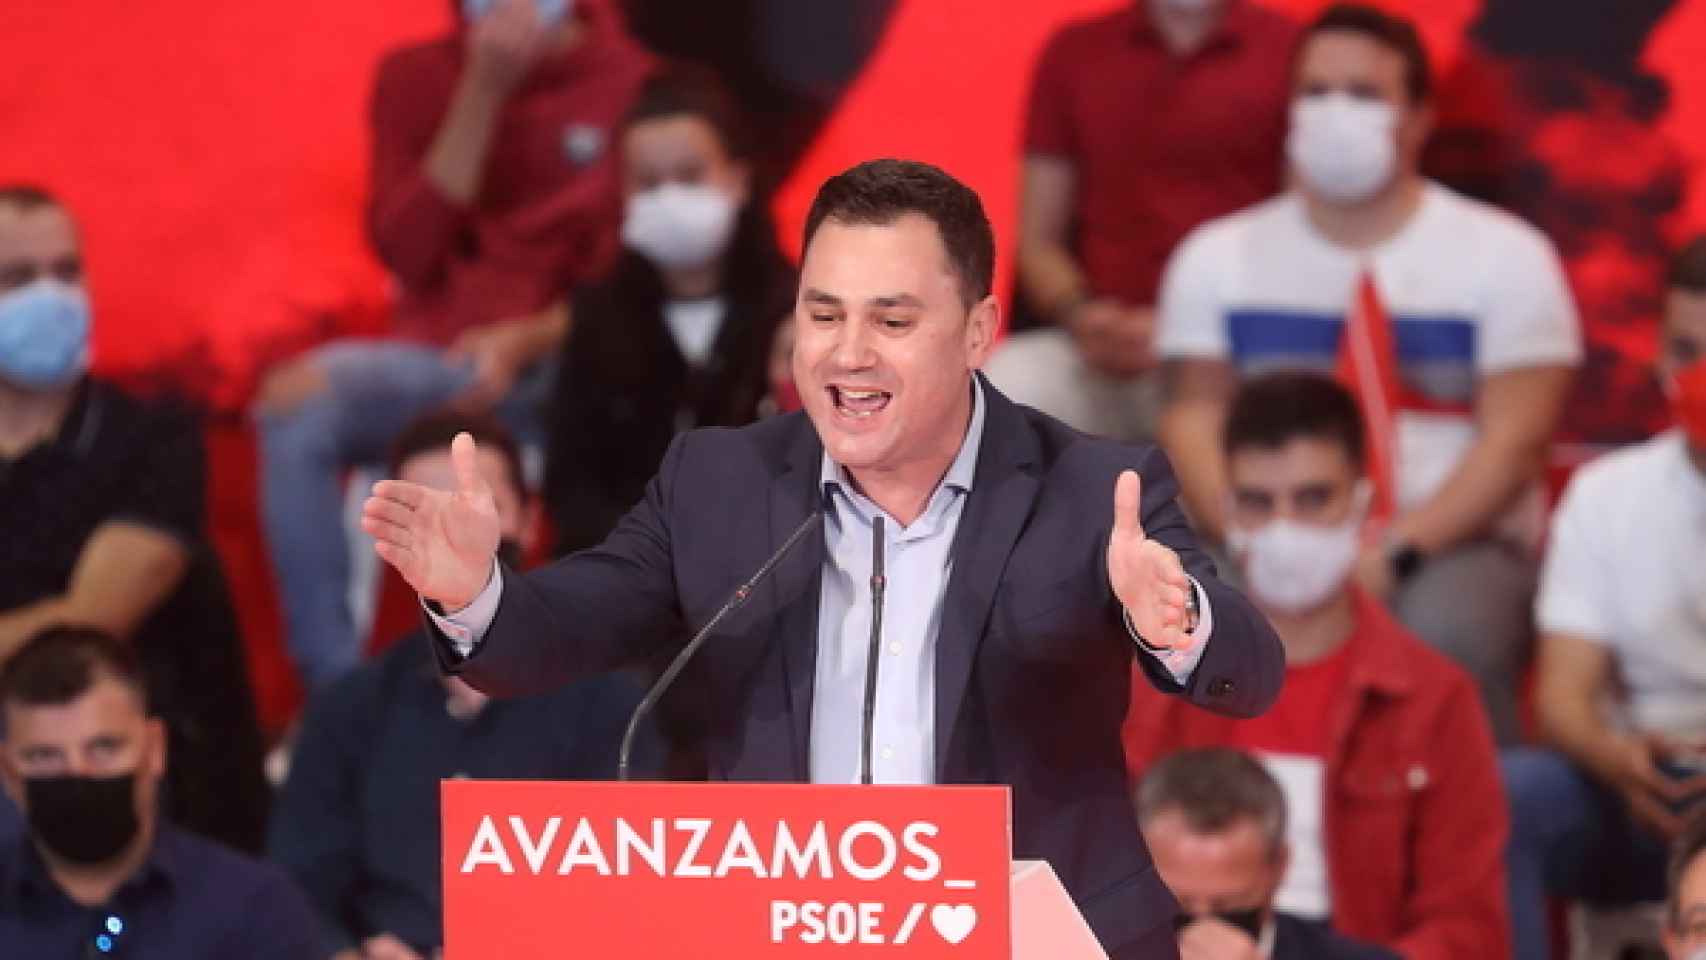 El secretario provincial de los socialistas leoneses y diputado nacional, Javier Alfonso Cendón